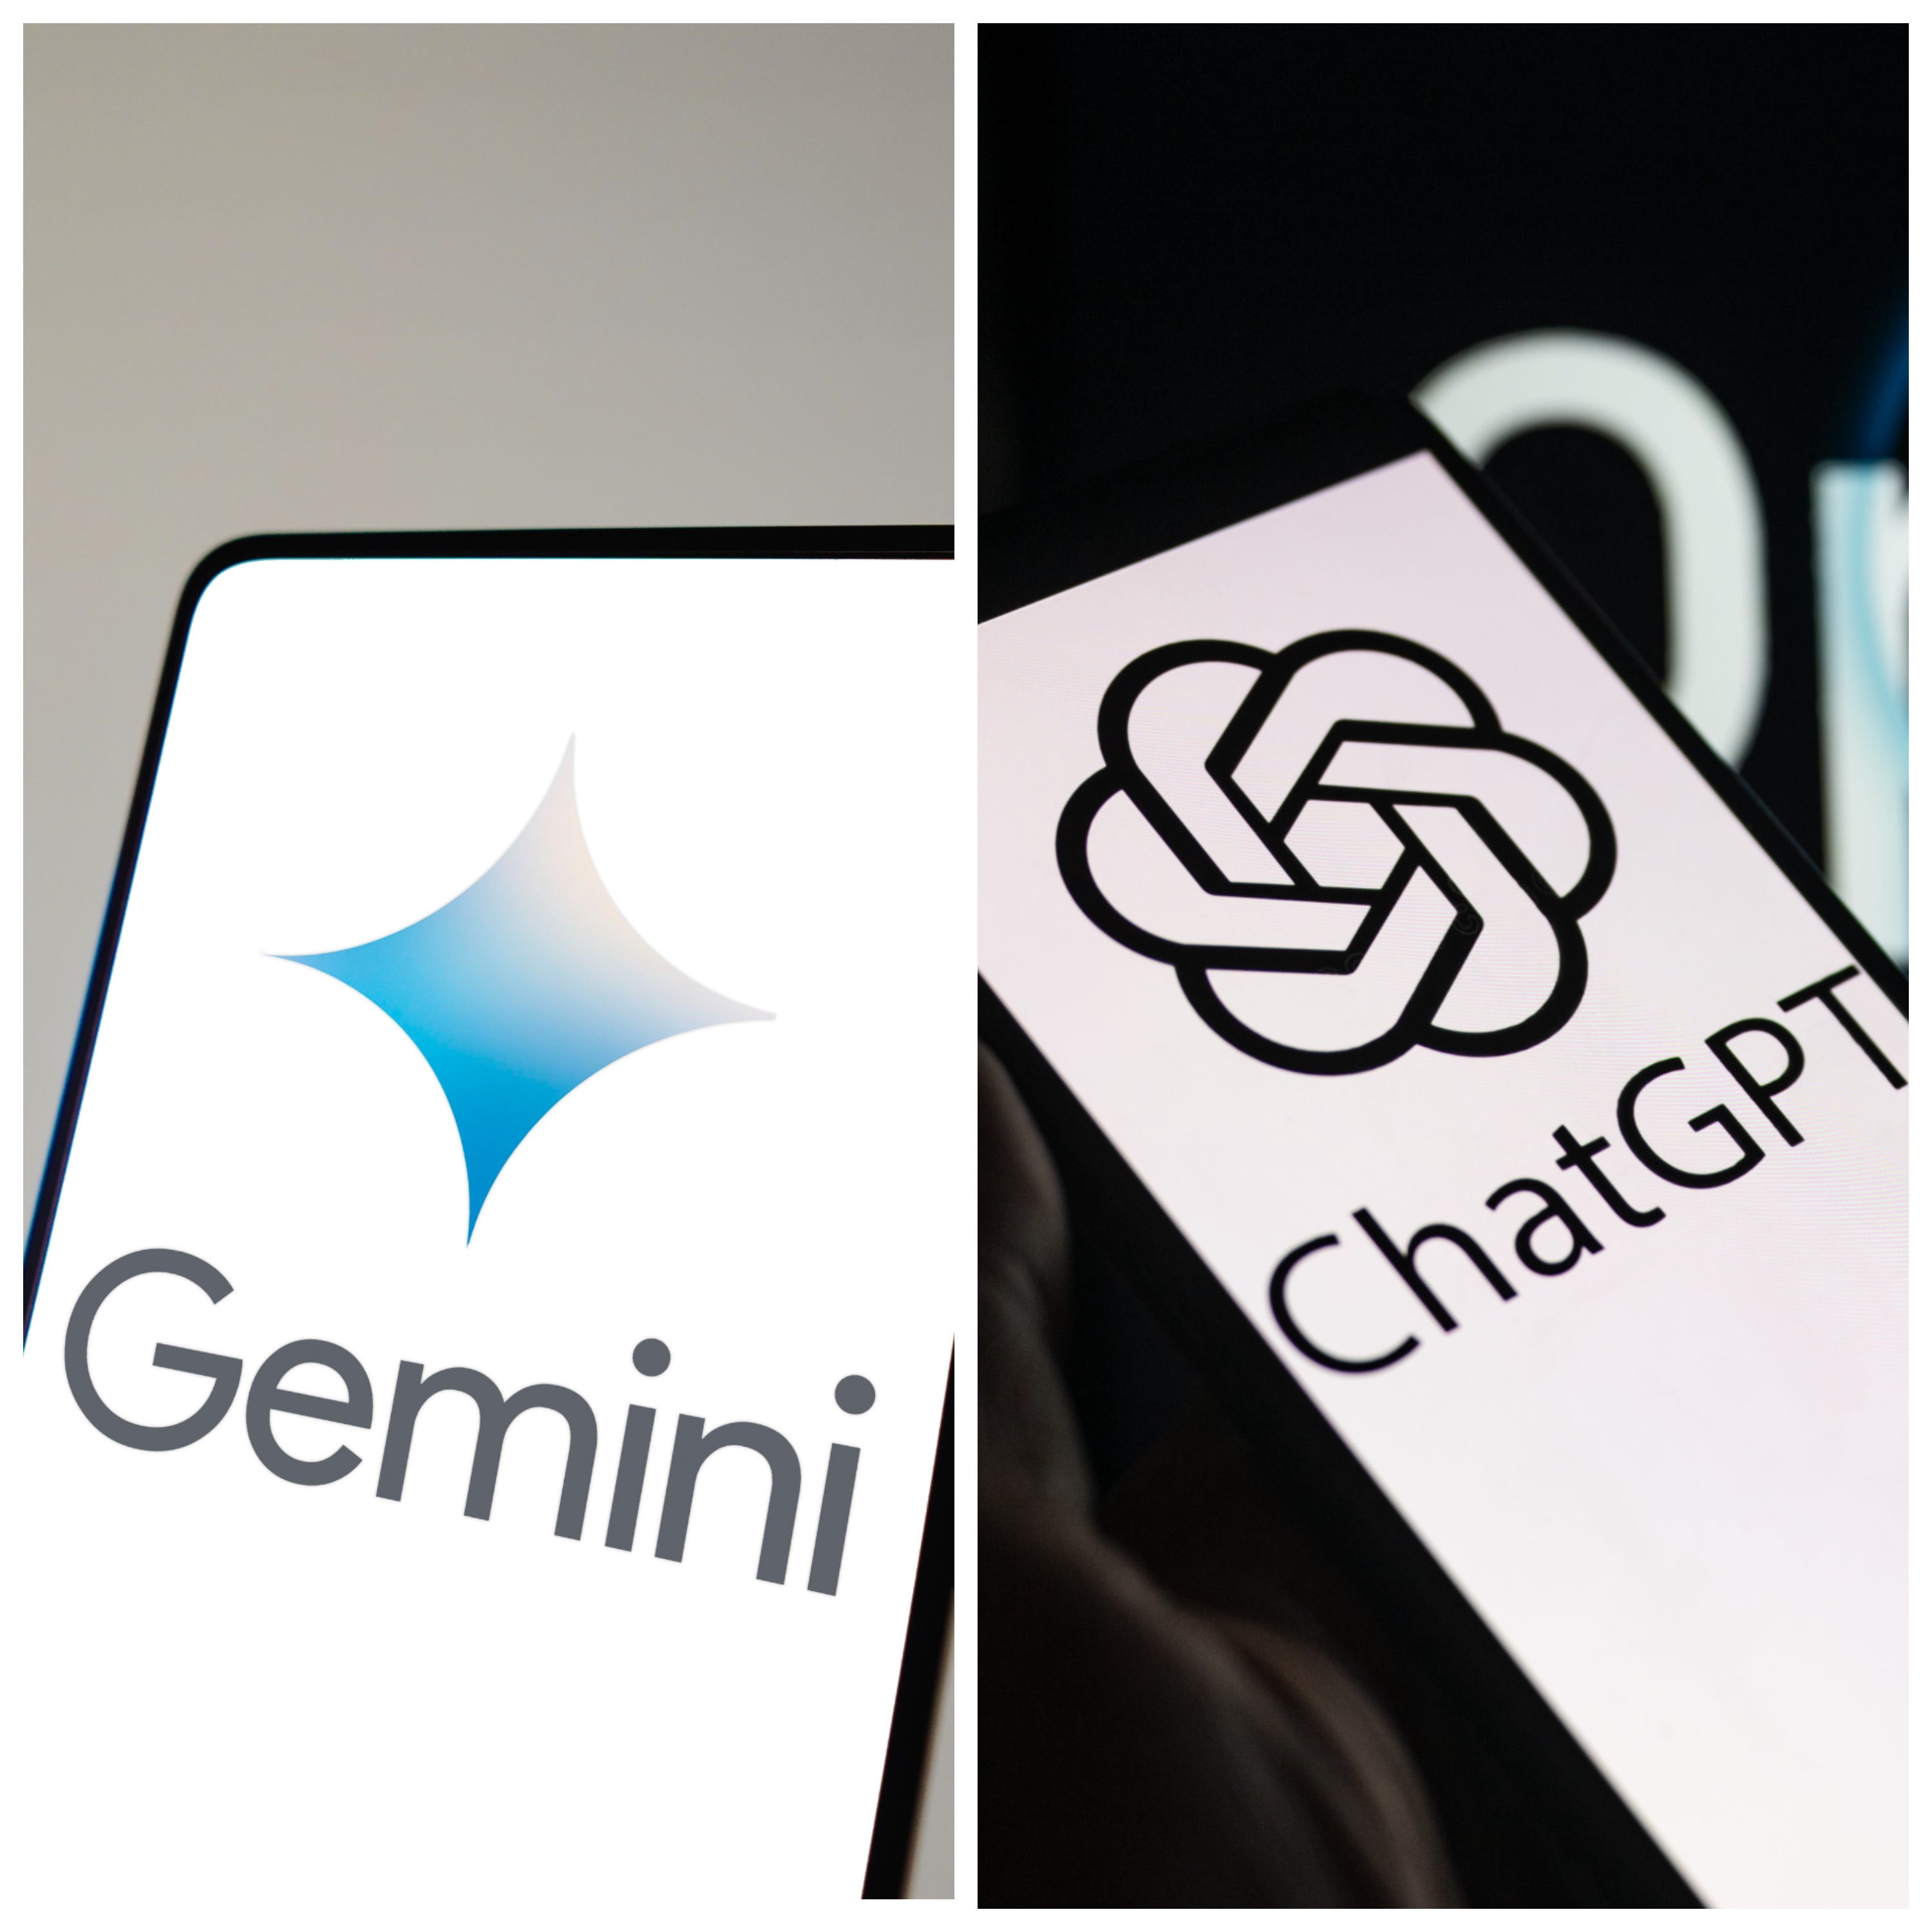 Zwei nebeneinander liegende Bilder zeigen Smartphones mit dem Gemini-Logo und dem ChatGPT-Logo.